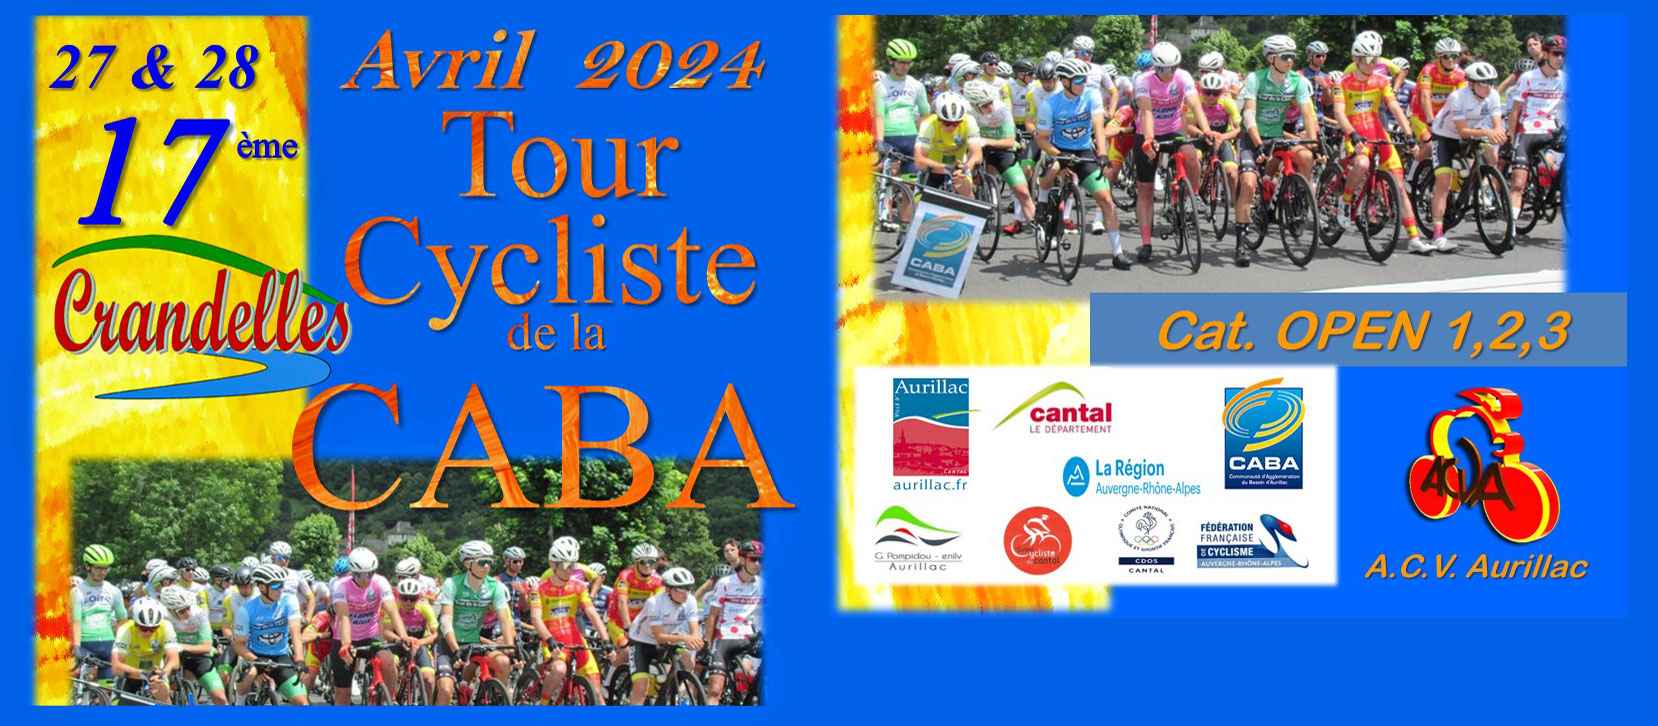 Tour cycliste CABA